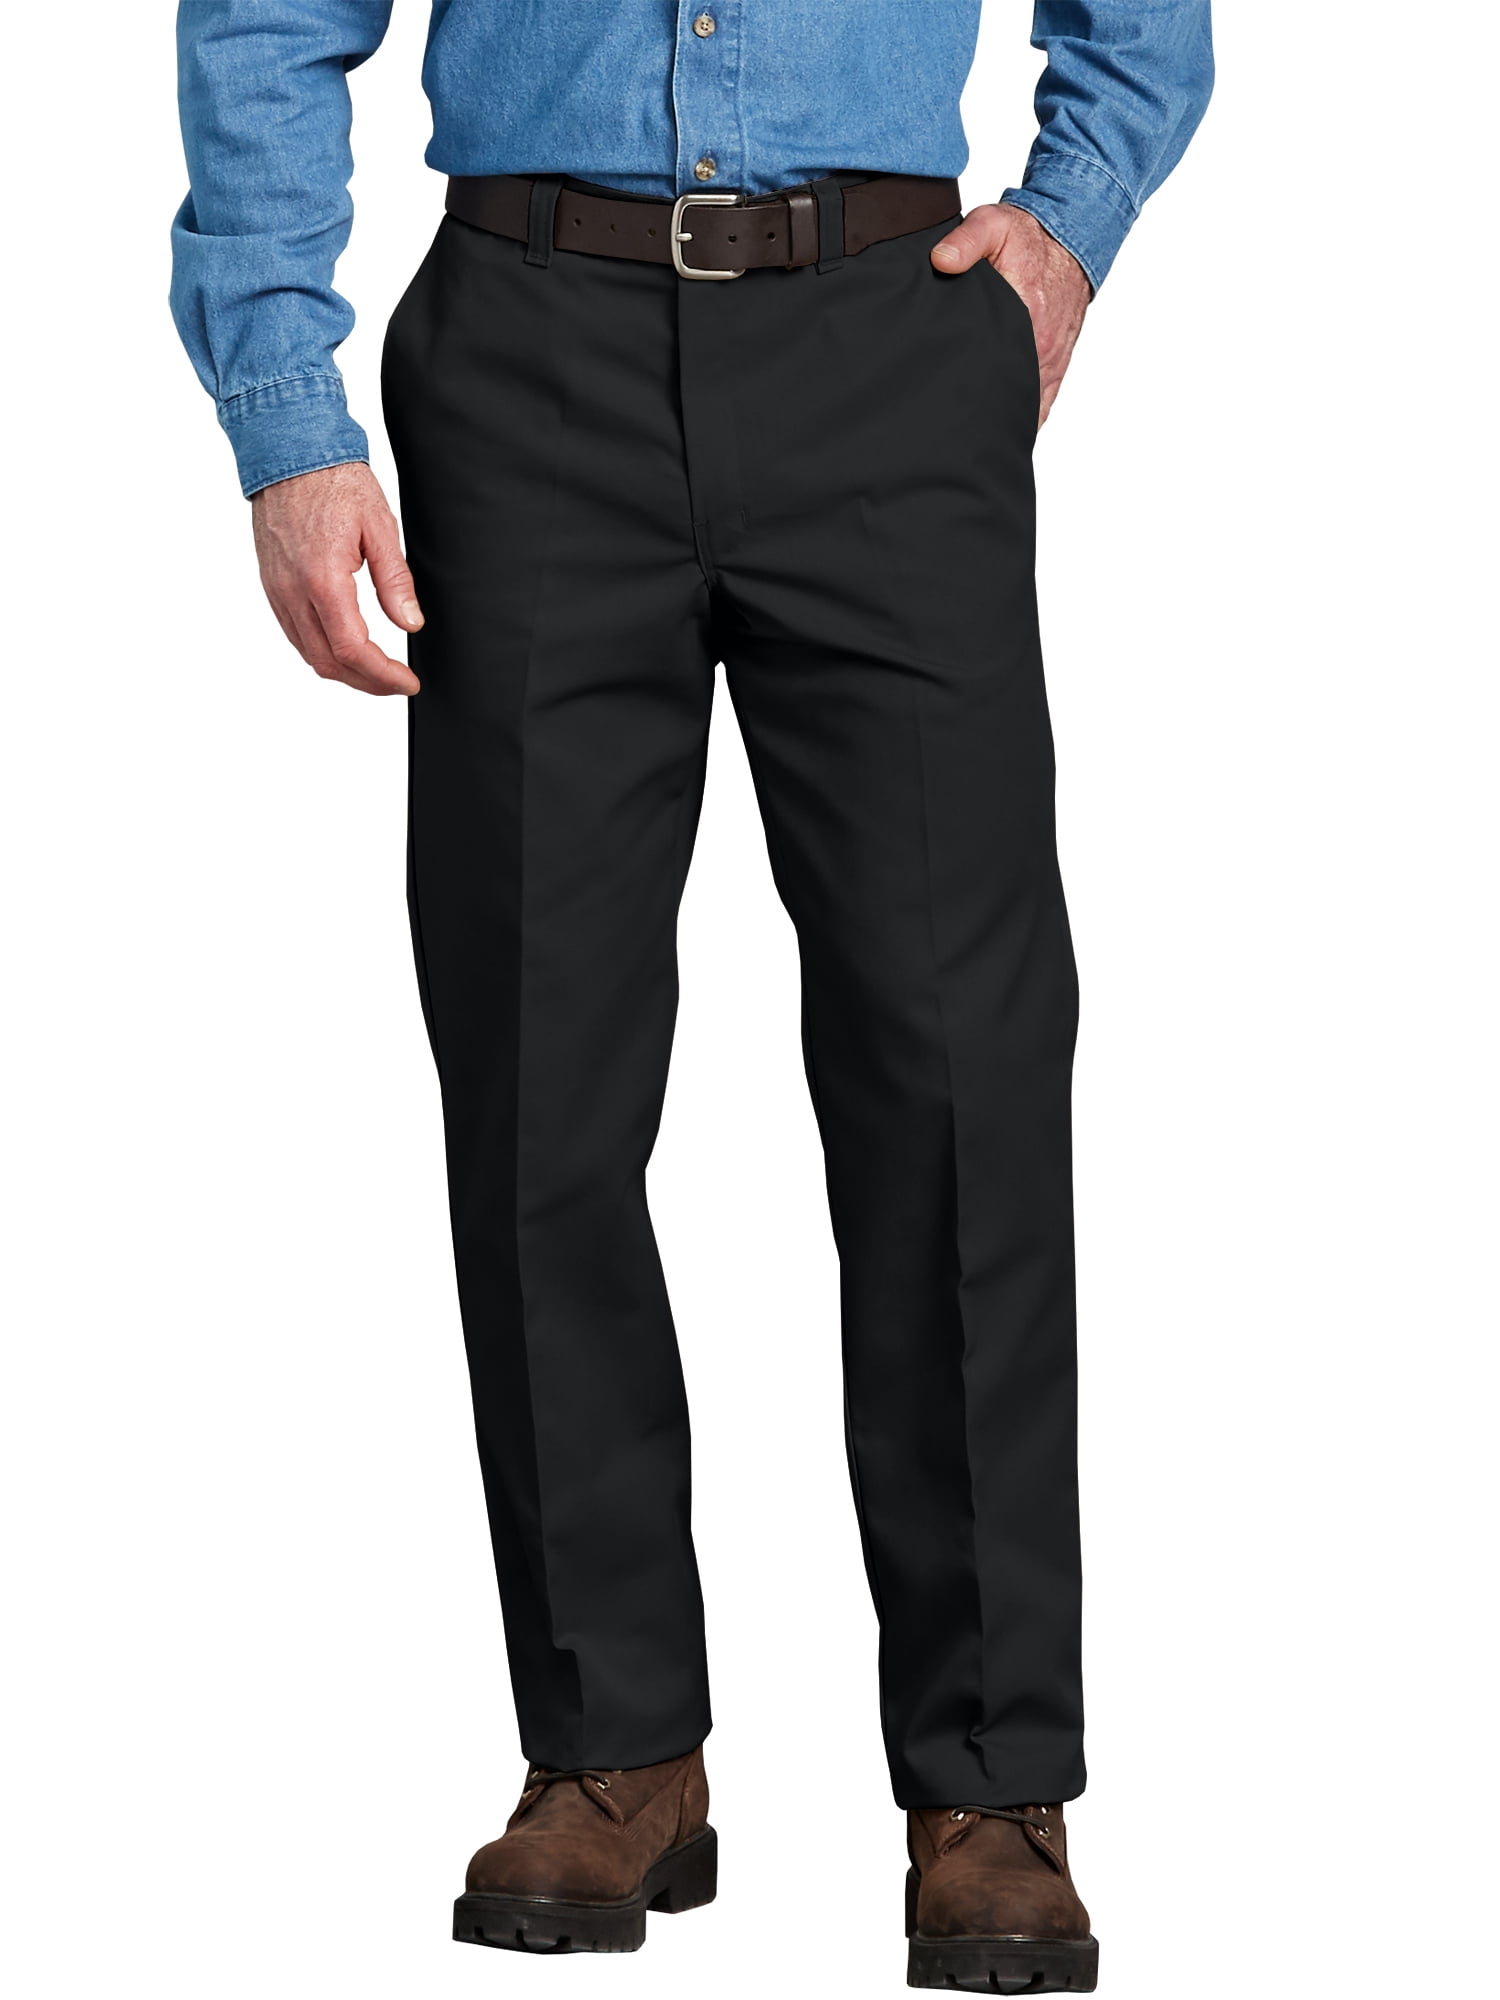 Genuine Dickies - Men's Regular Fit Flat Front Pant - Walmart.com